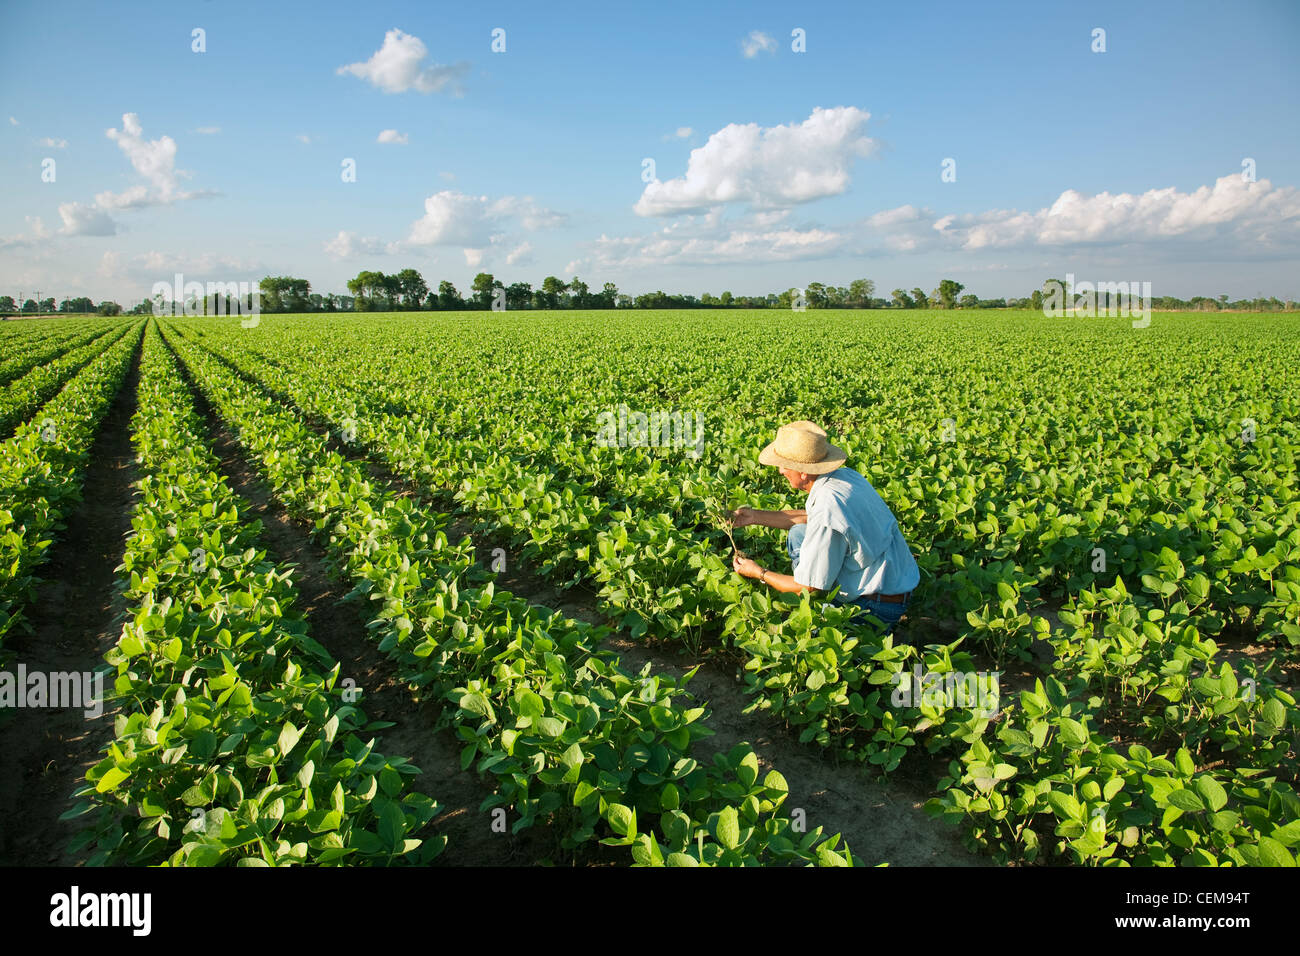 Agricoltura - un agricoltore (coltivatore) ispeziona la sua metà la crescita del raccolto di soia / vicino a Jonesboro, Arkansas, Stati Uniti d'America. Foto Stock